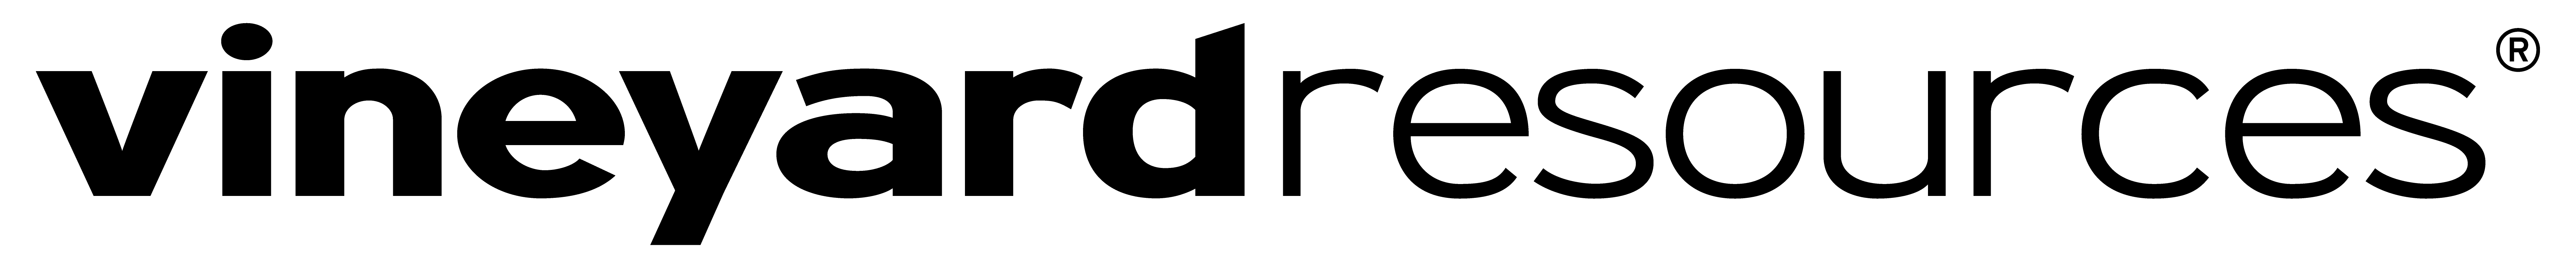 Vineyard Resources logo